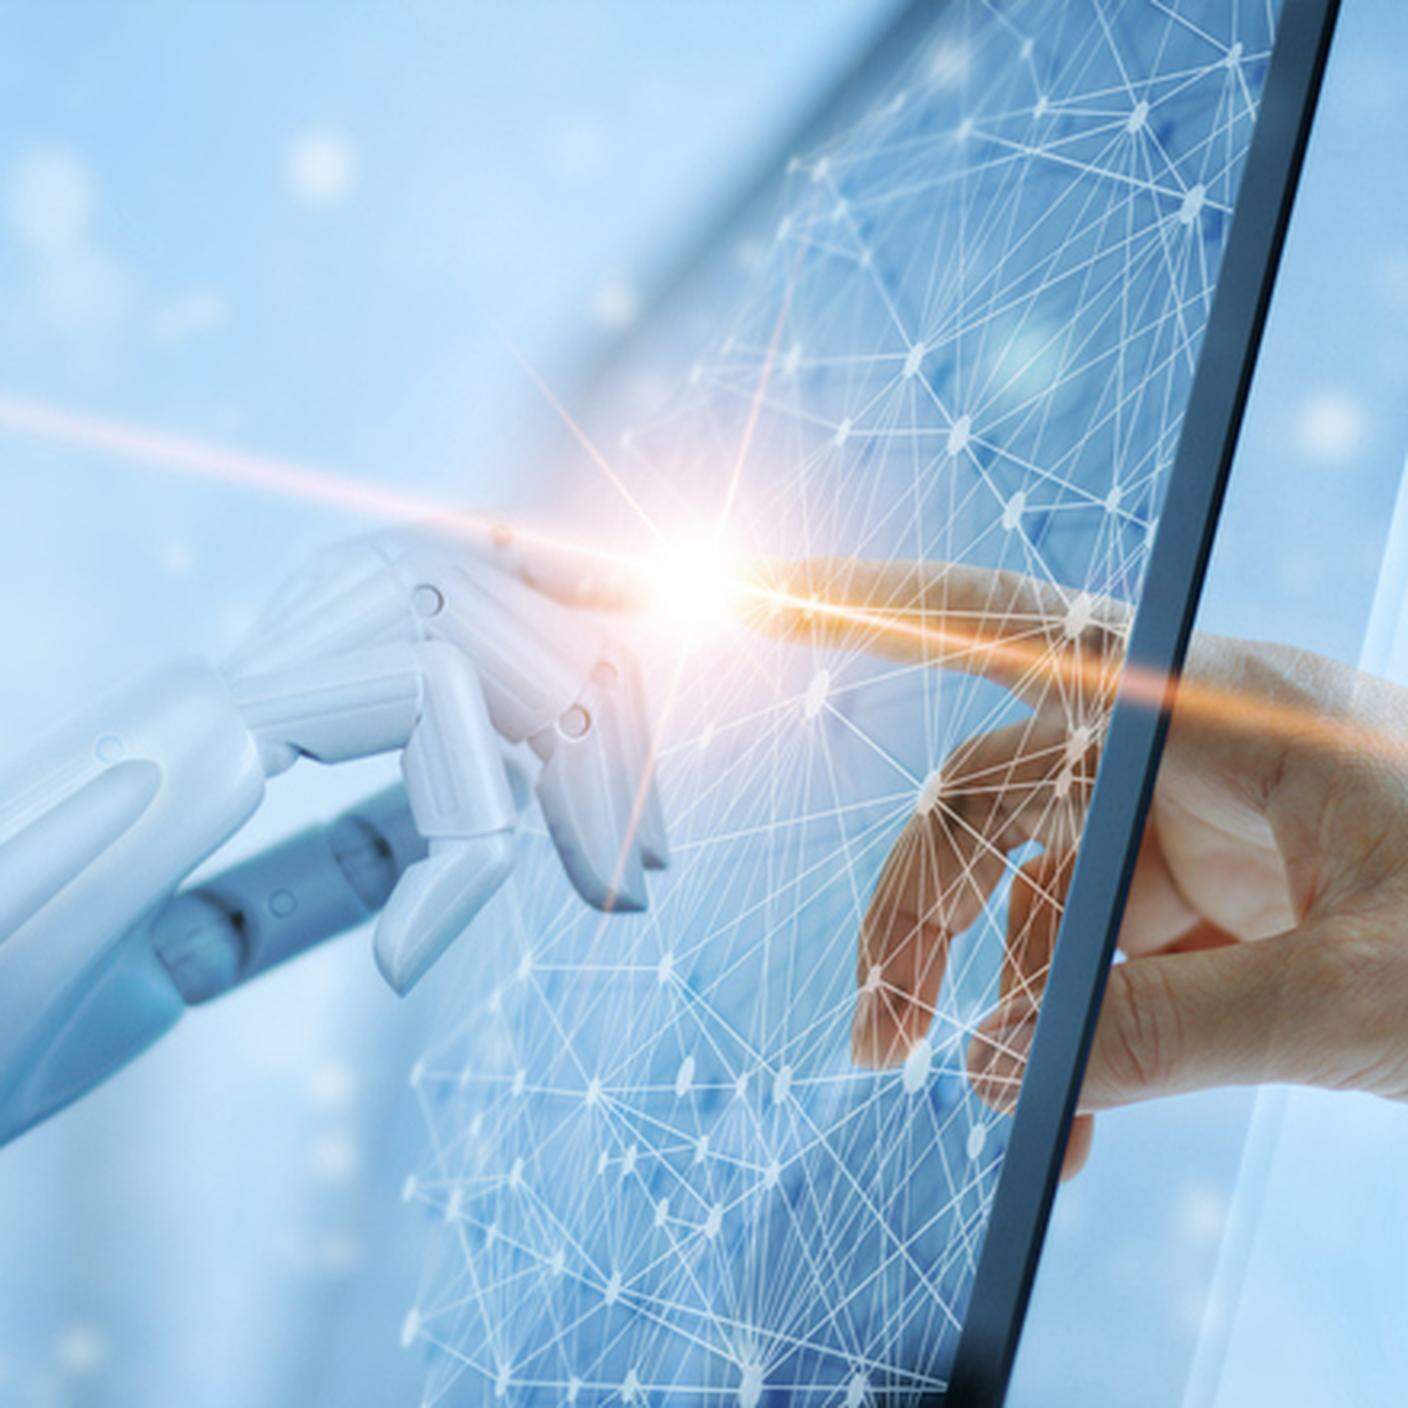 intelligenza artificiale essere umano collaborazione